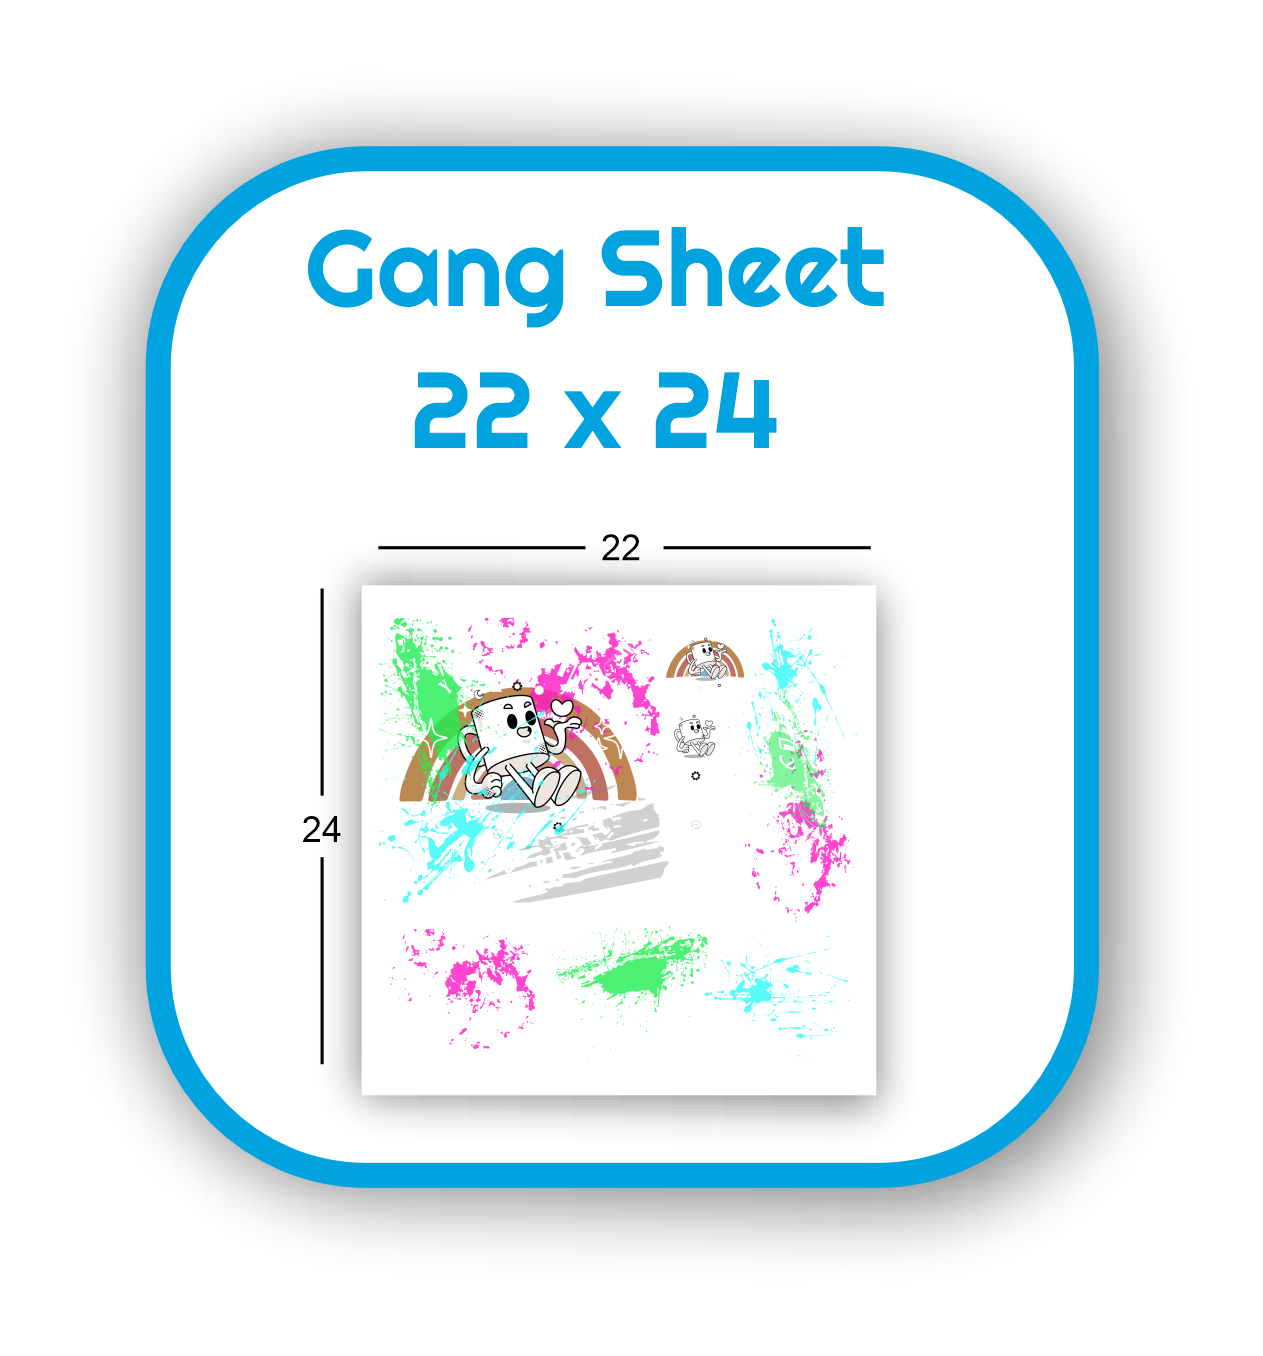 gang-sheet-22x24